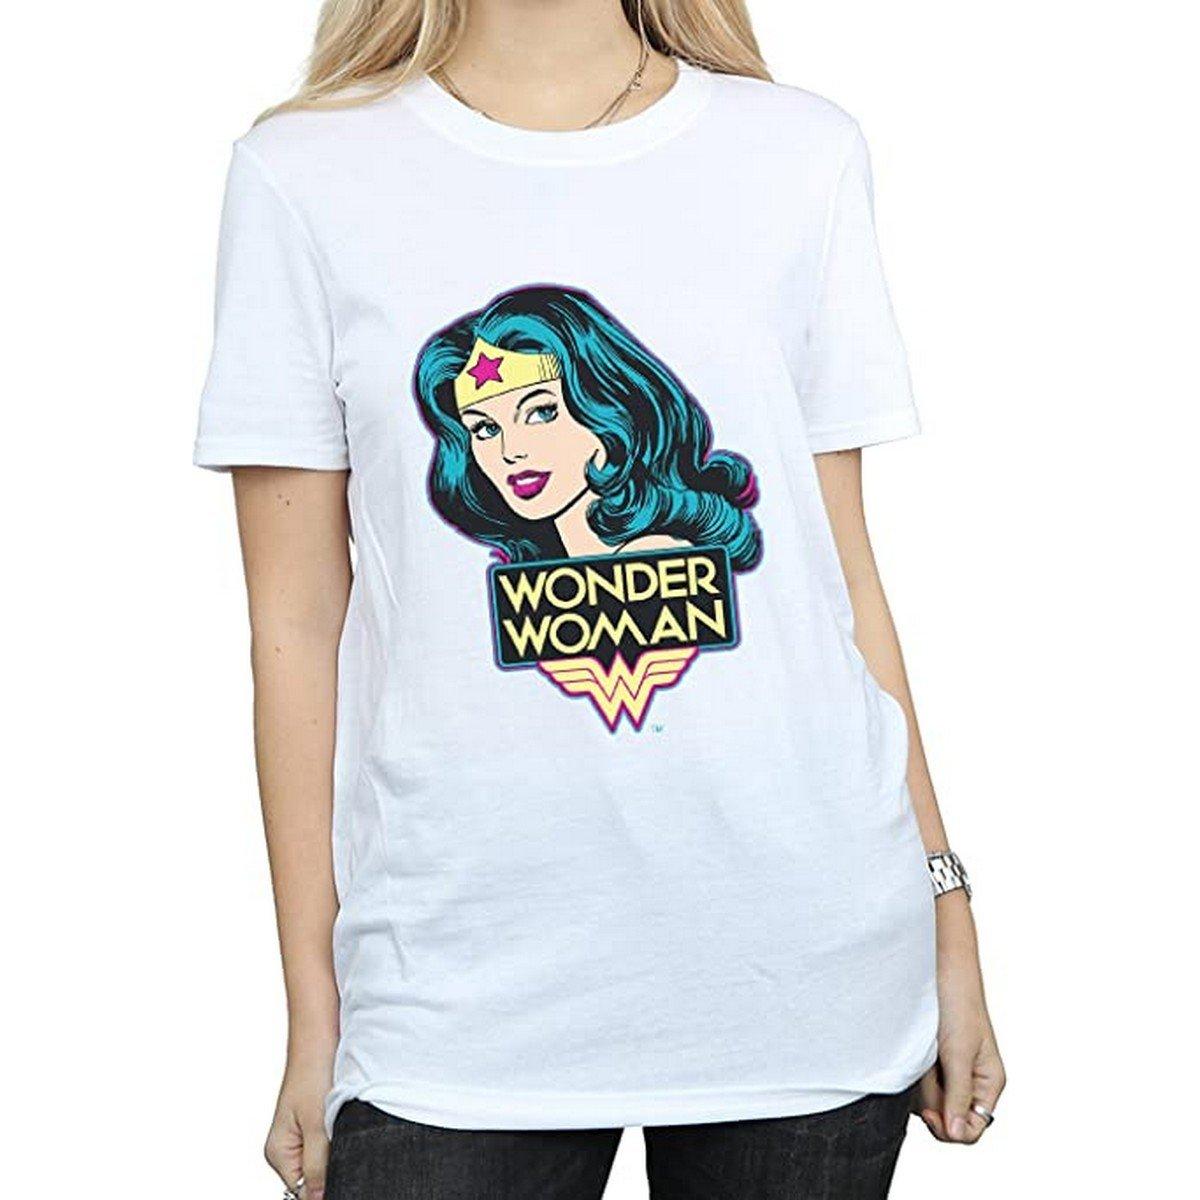 Tshirt Damen Weiss L von Wonder Woman